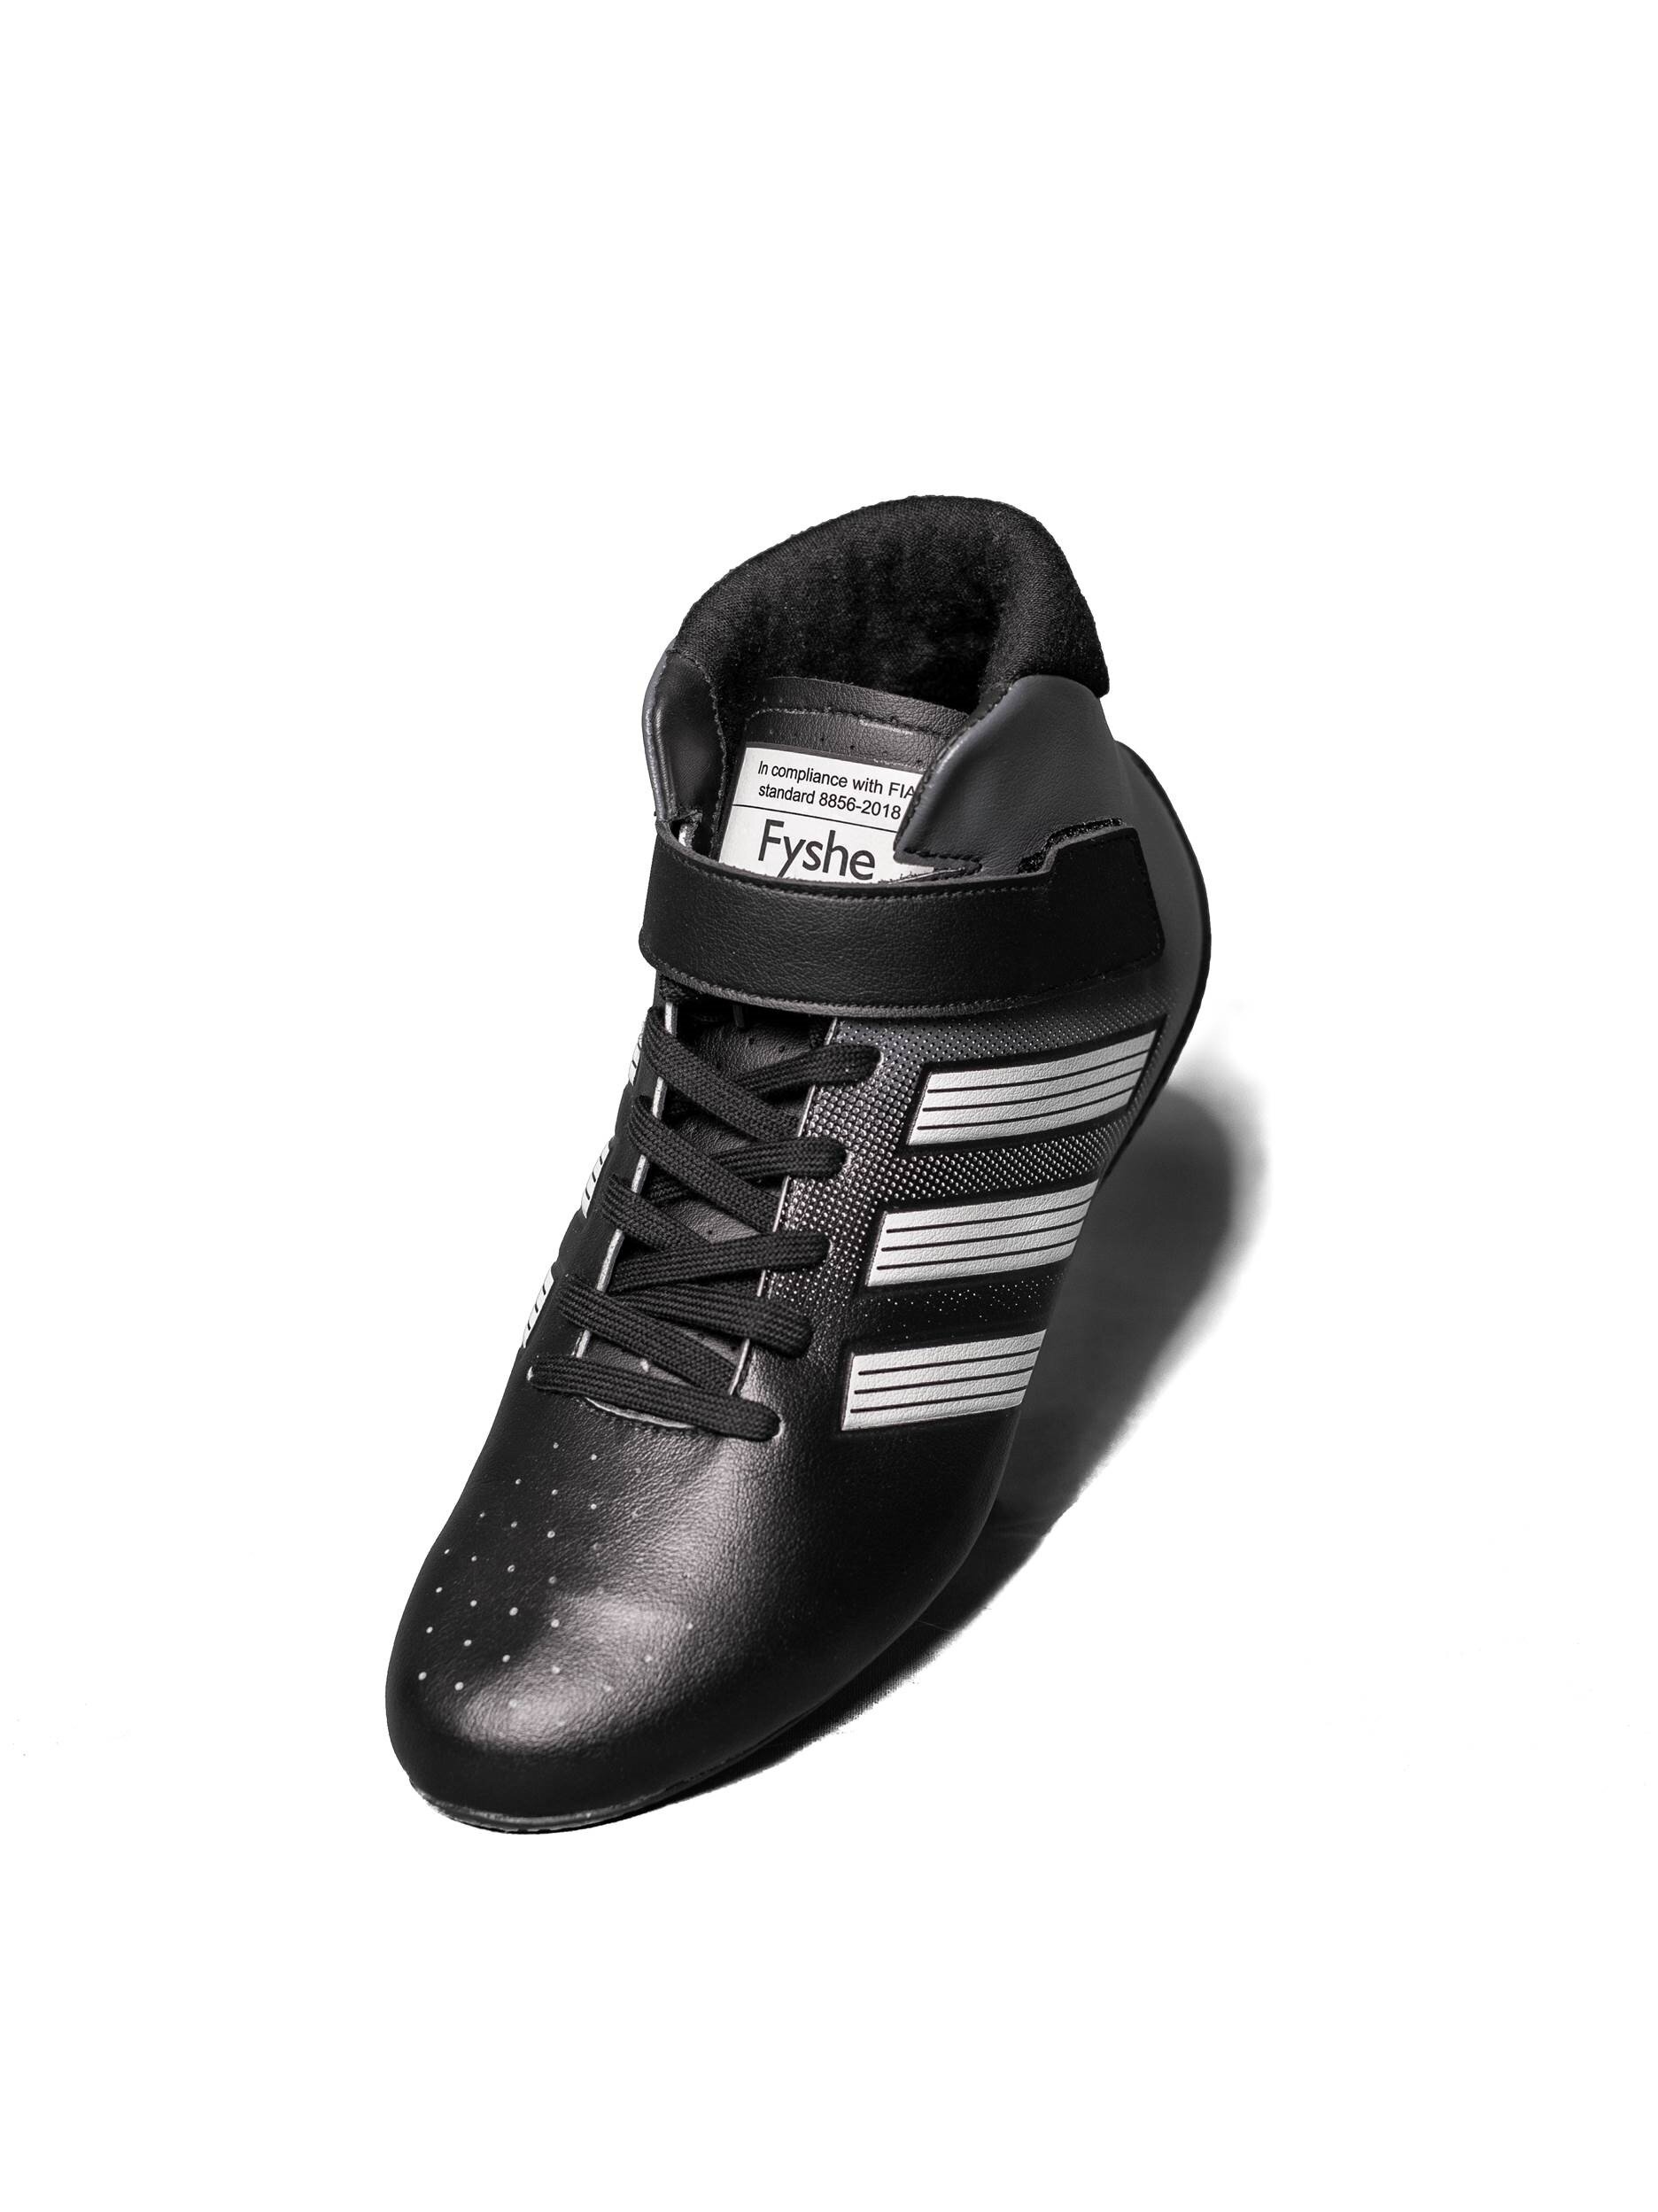 Adidas racing shoe type RS black white 